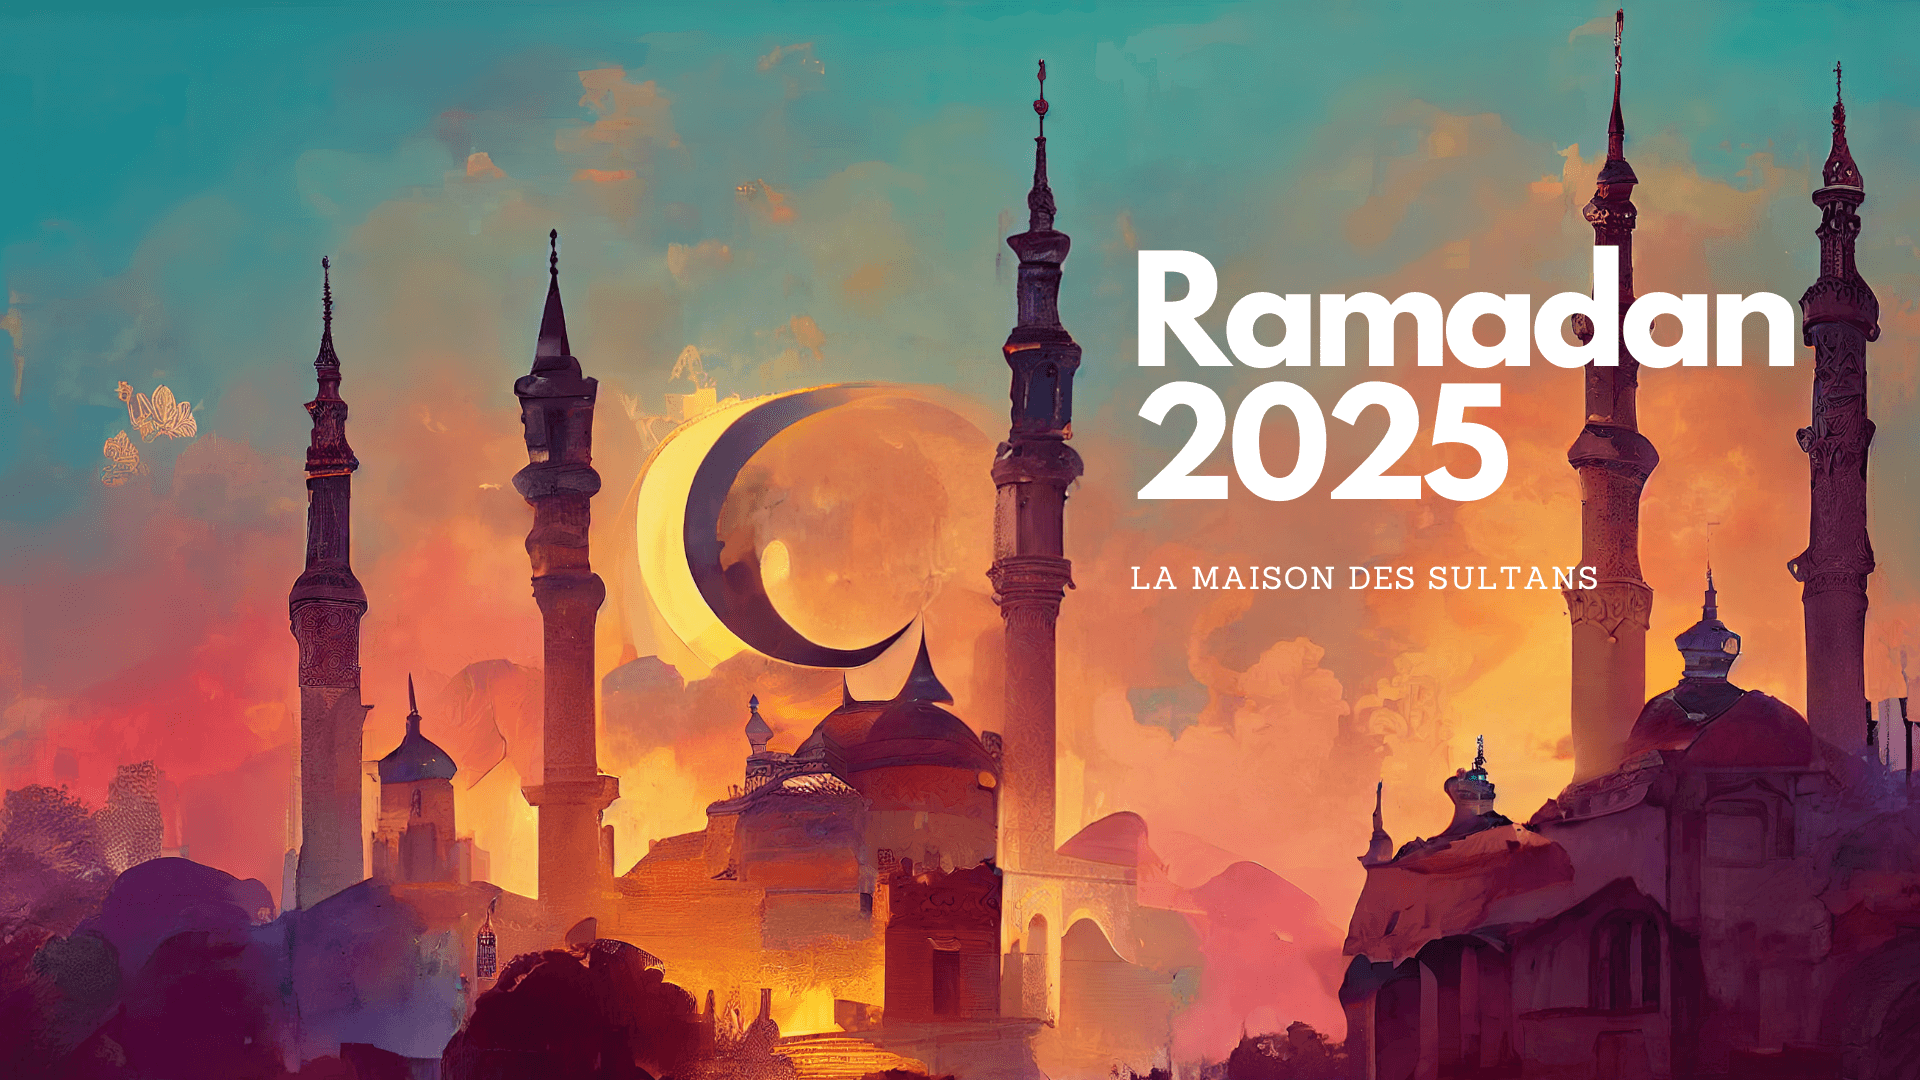 Ramadan 2023: dates et horaires en France – La Maison des Sultans